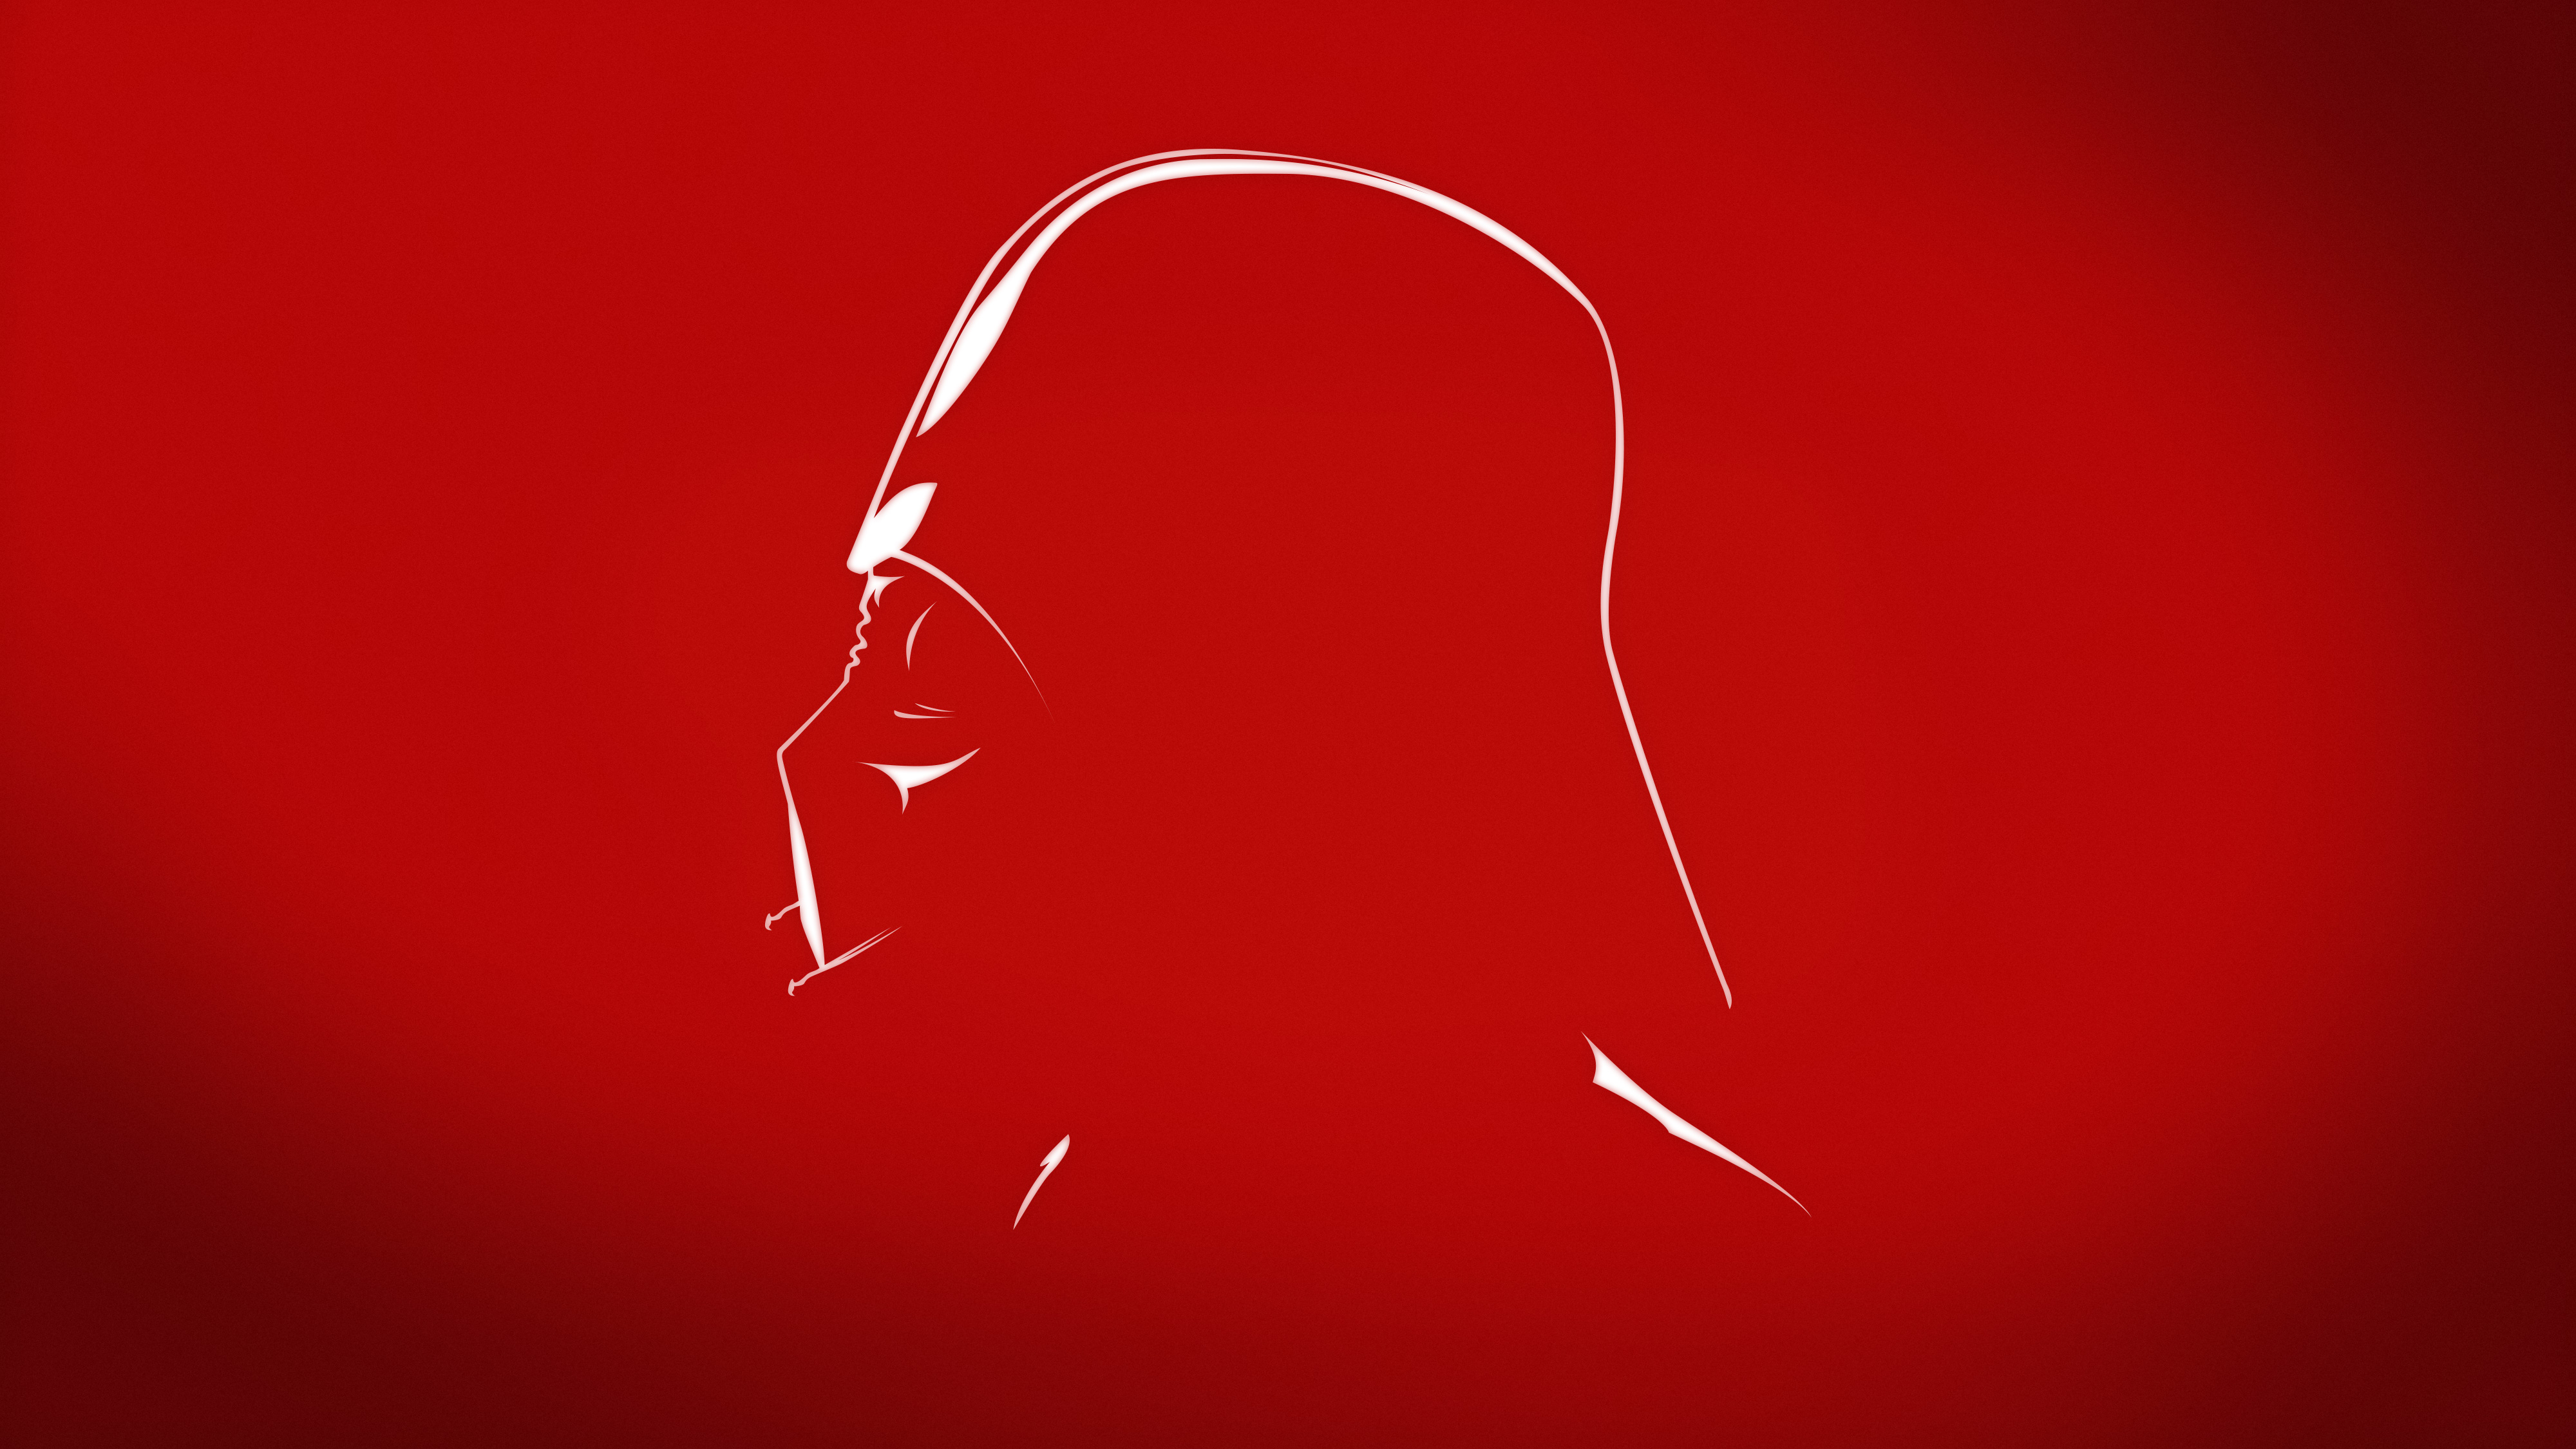 Darth Vader Minimal 4K Wallpapers